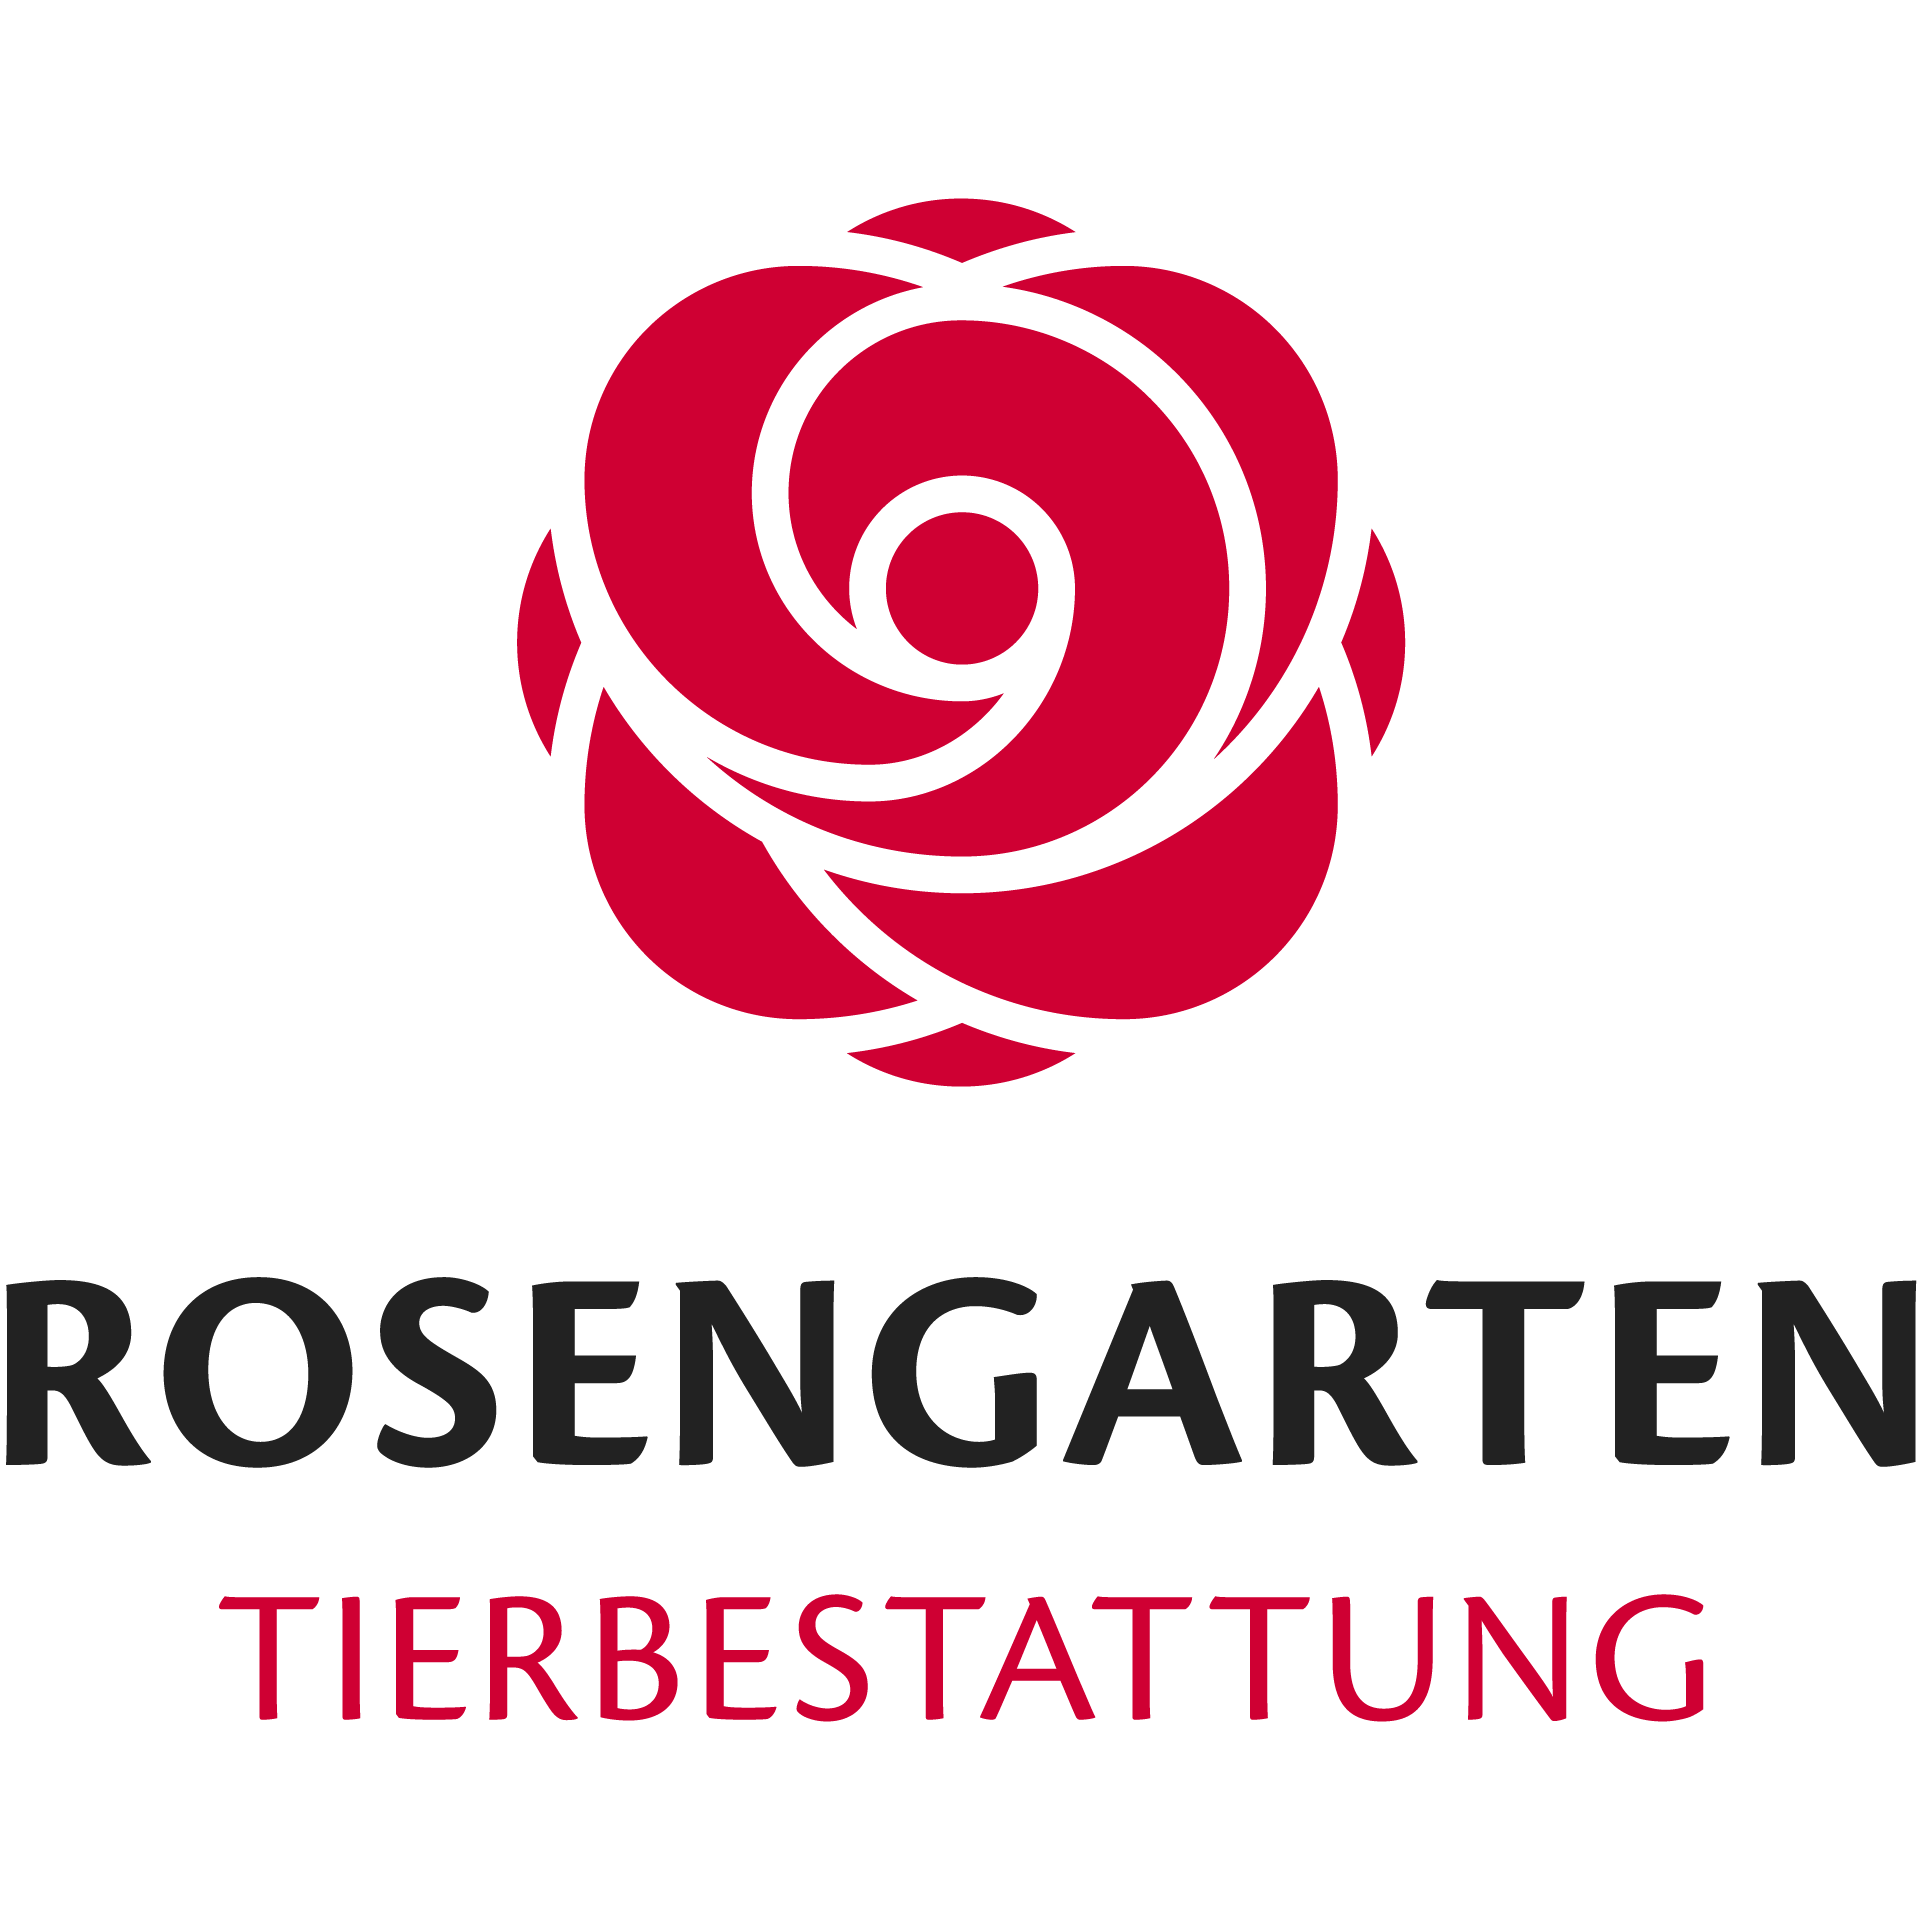 ROSENGARTEN-Tierbestattung Schleswig Logo